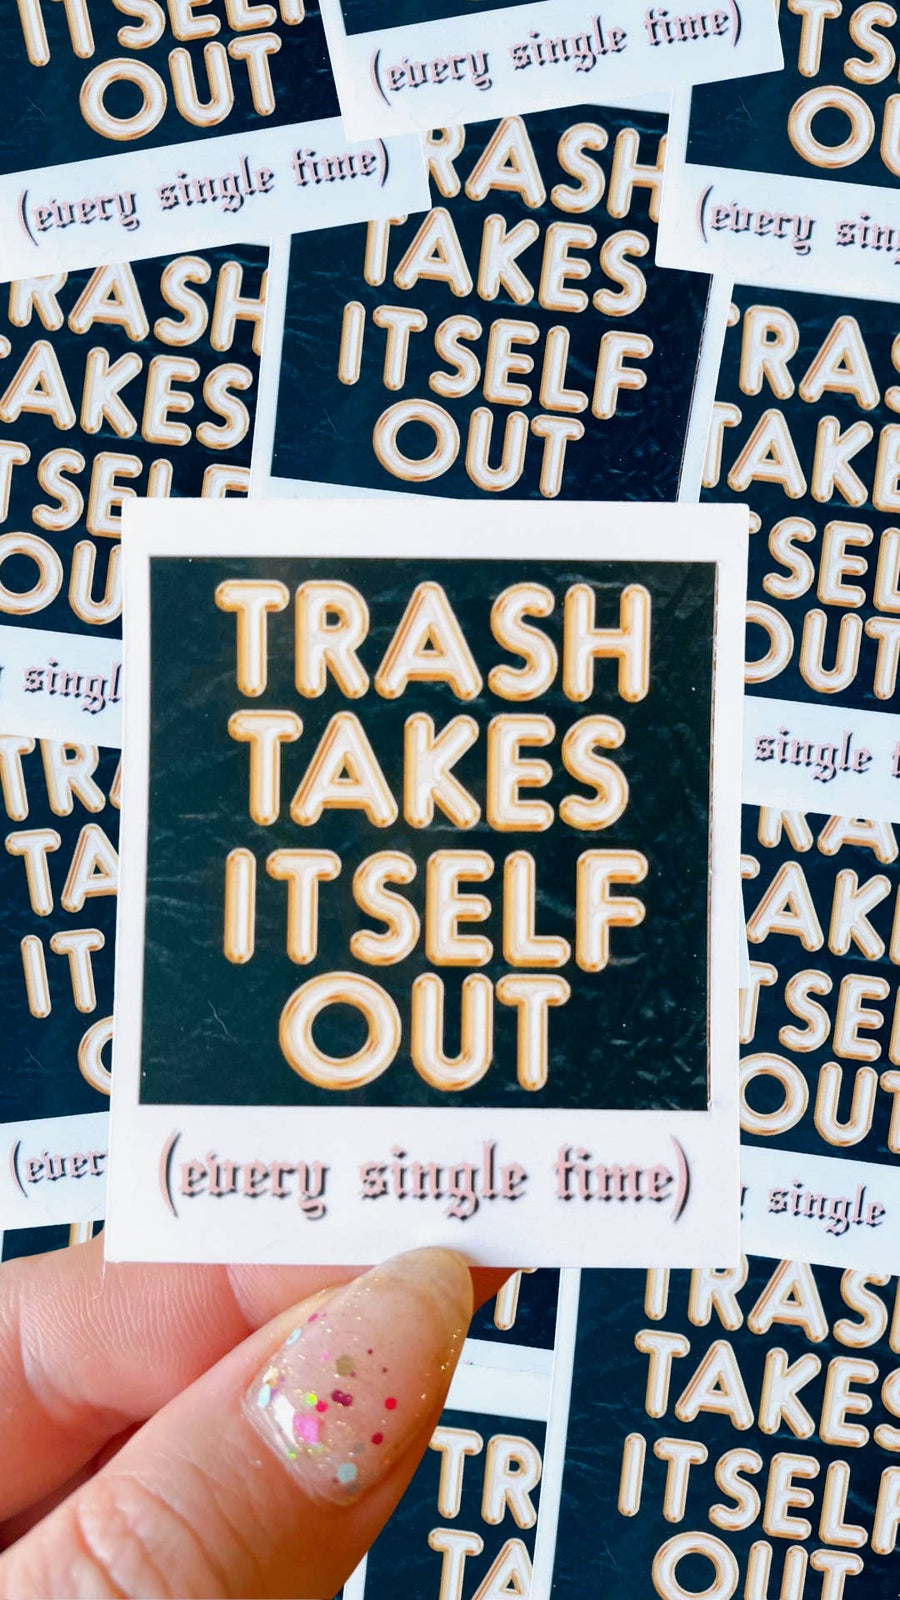 Taylor swift inspired waterproof sticker|trash takes itself